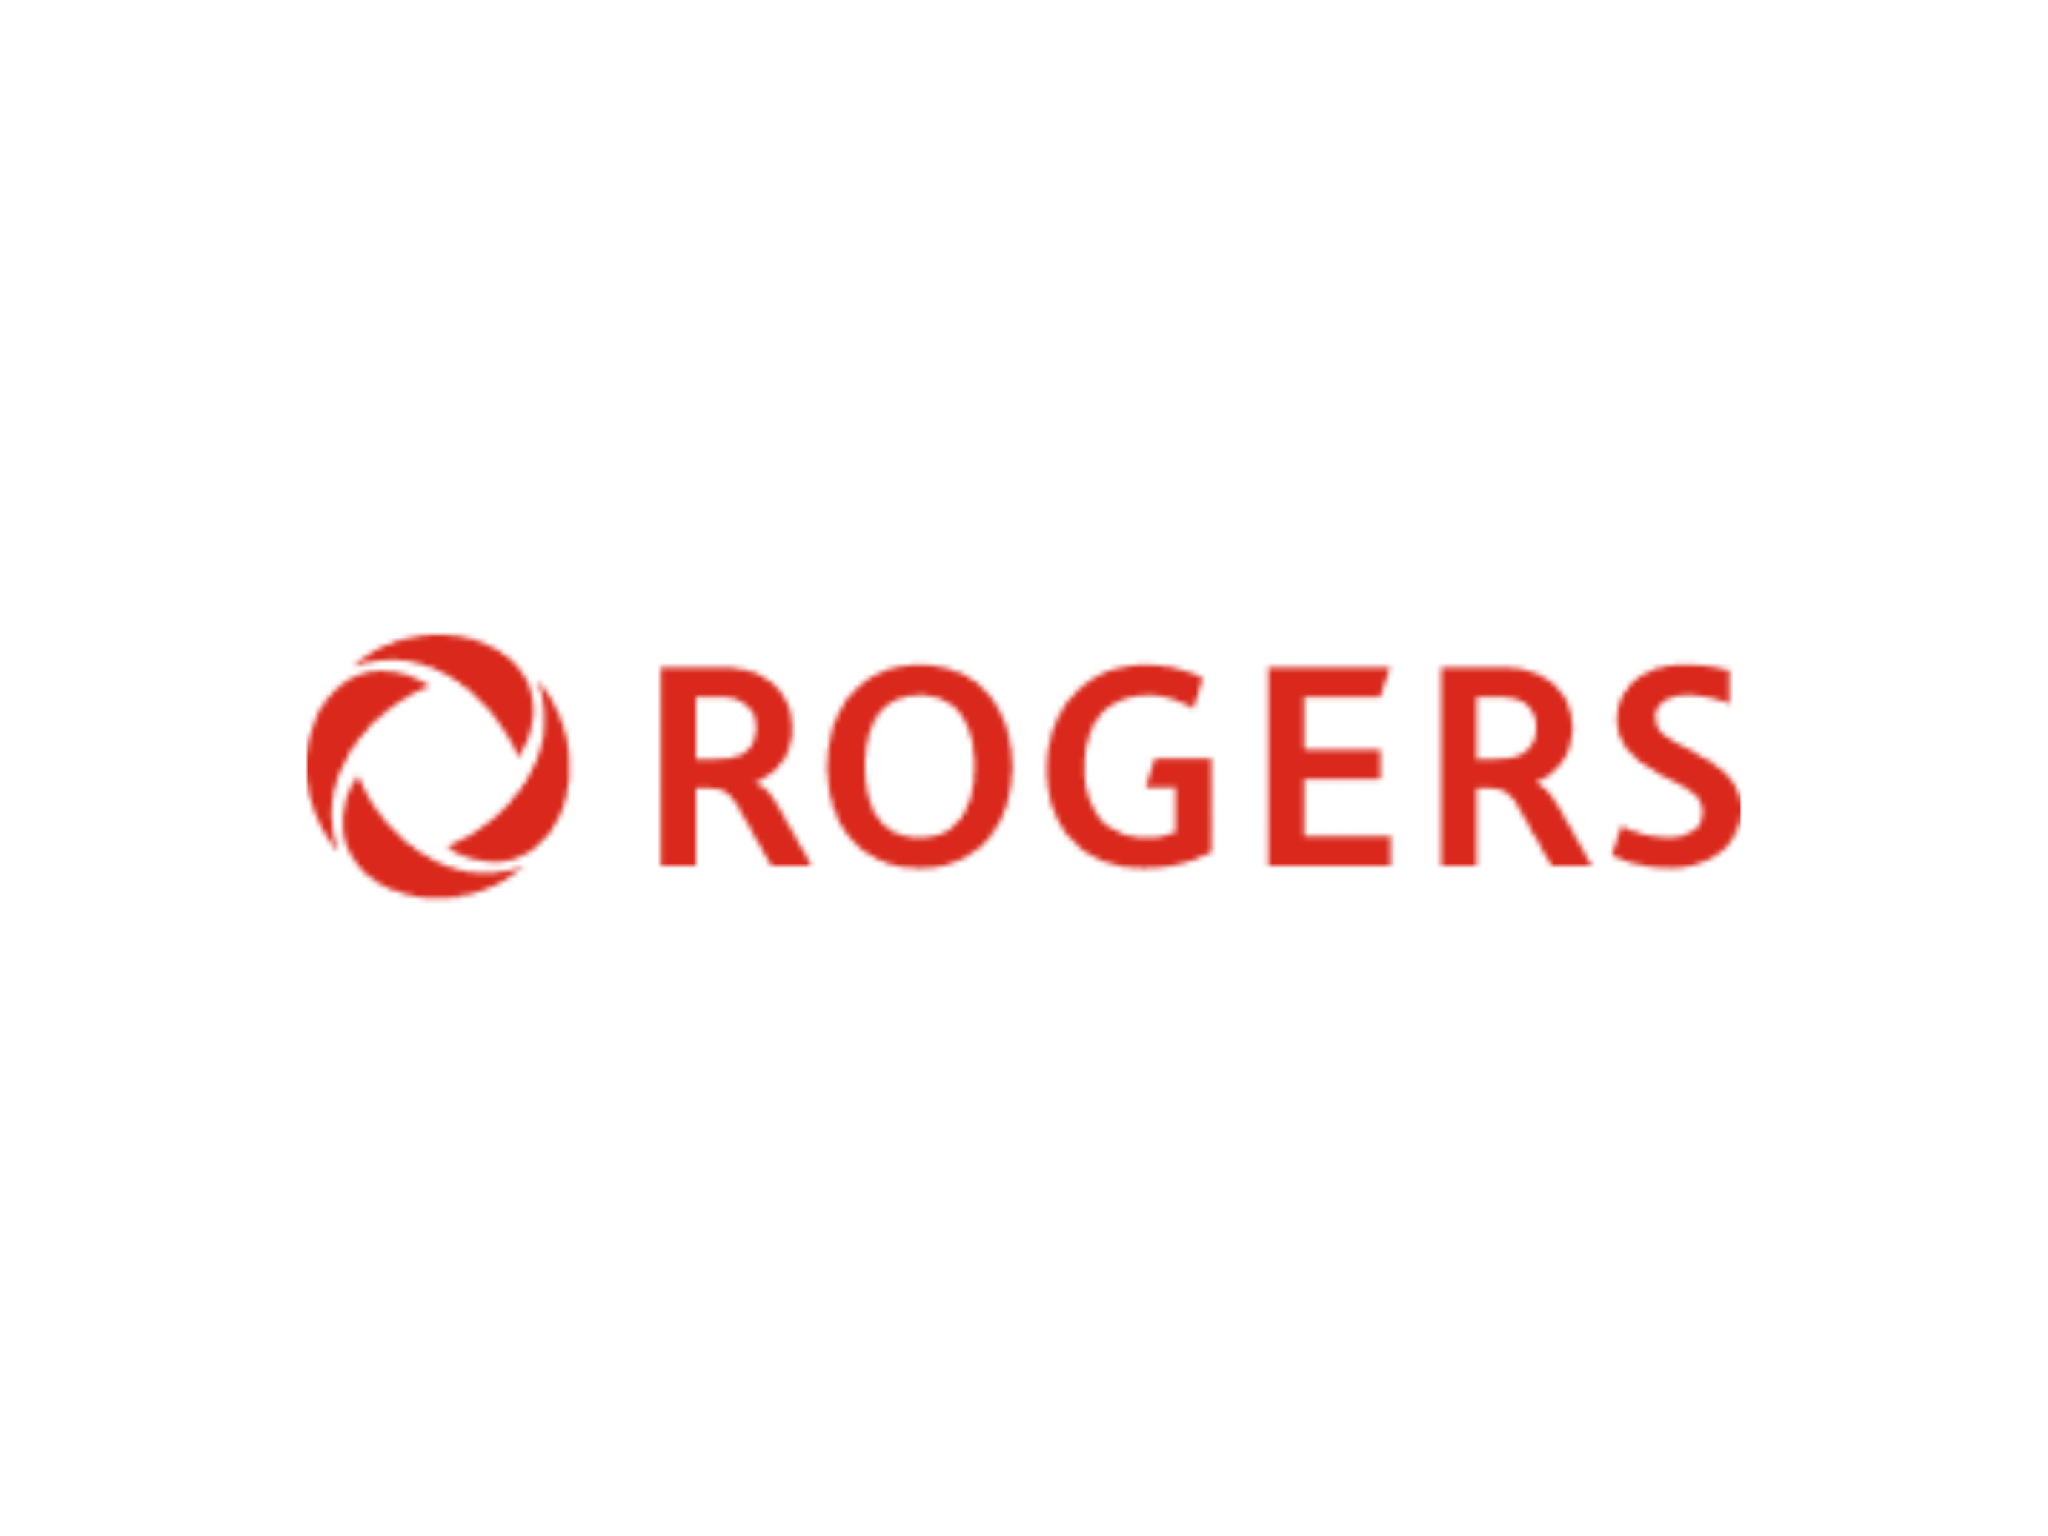  rogers-taps-3800-mhz-in-canadas-third-5g-spectrum-auction-details 